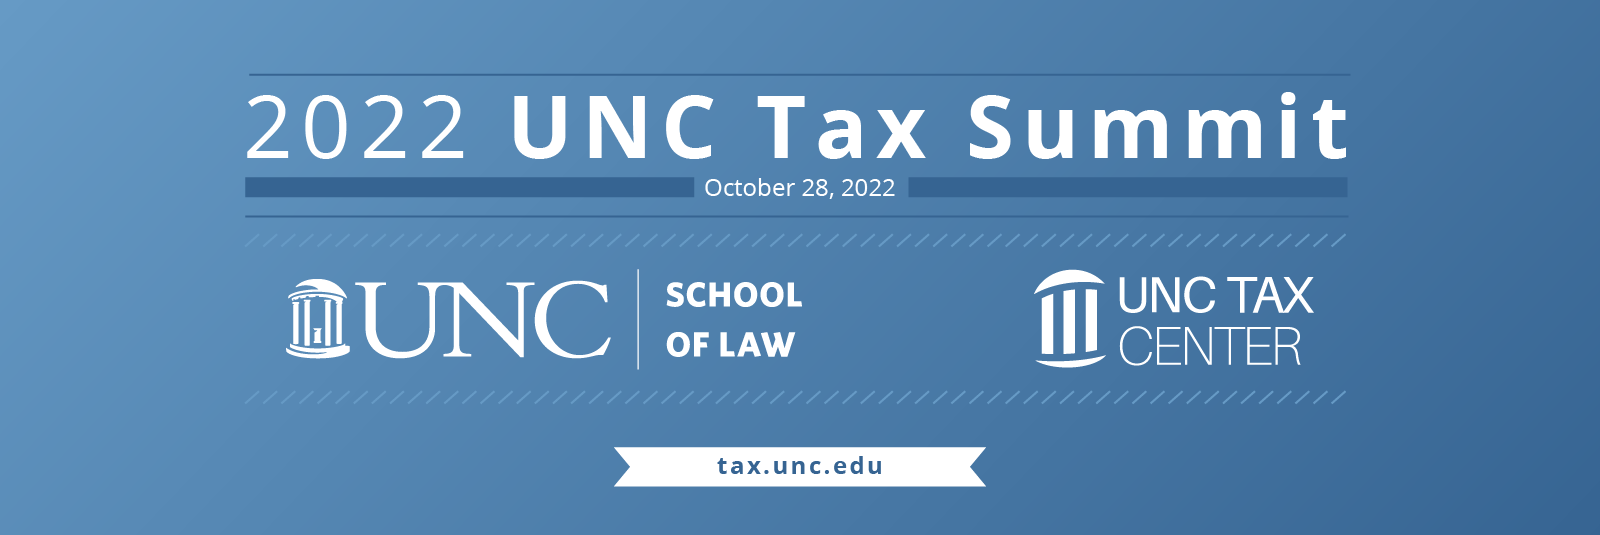 UNC Tax Summit 